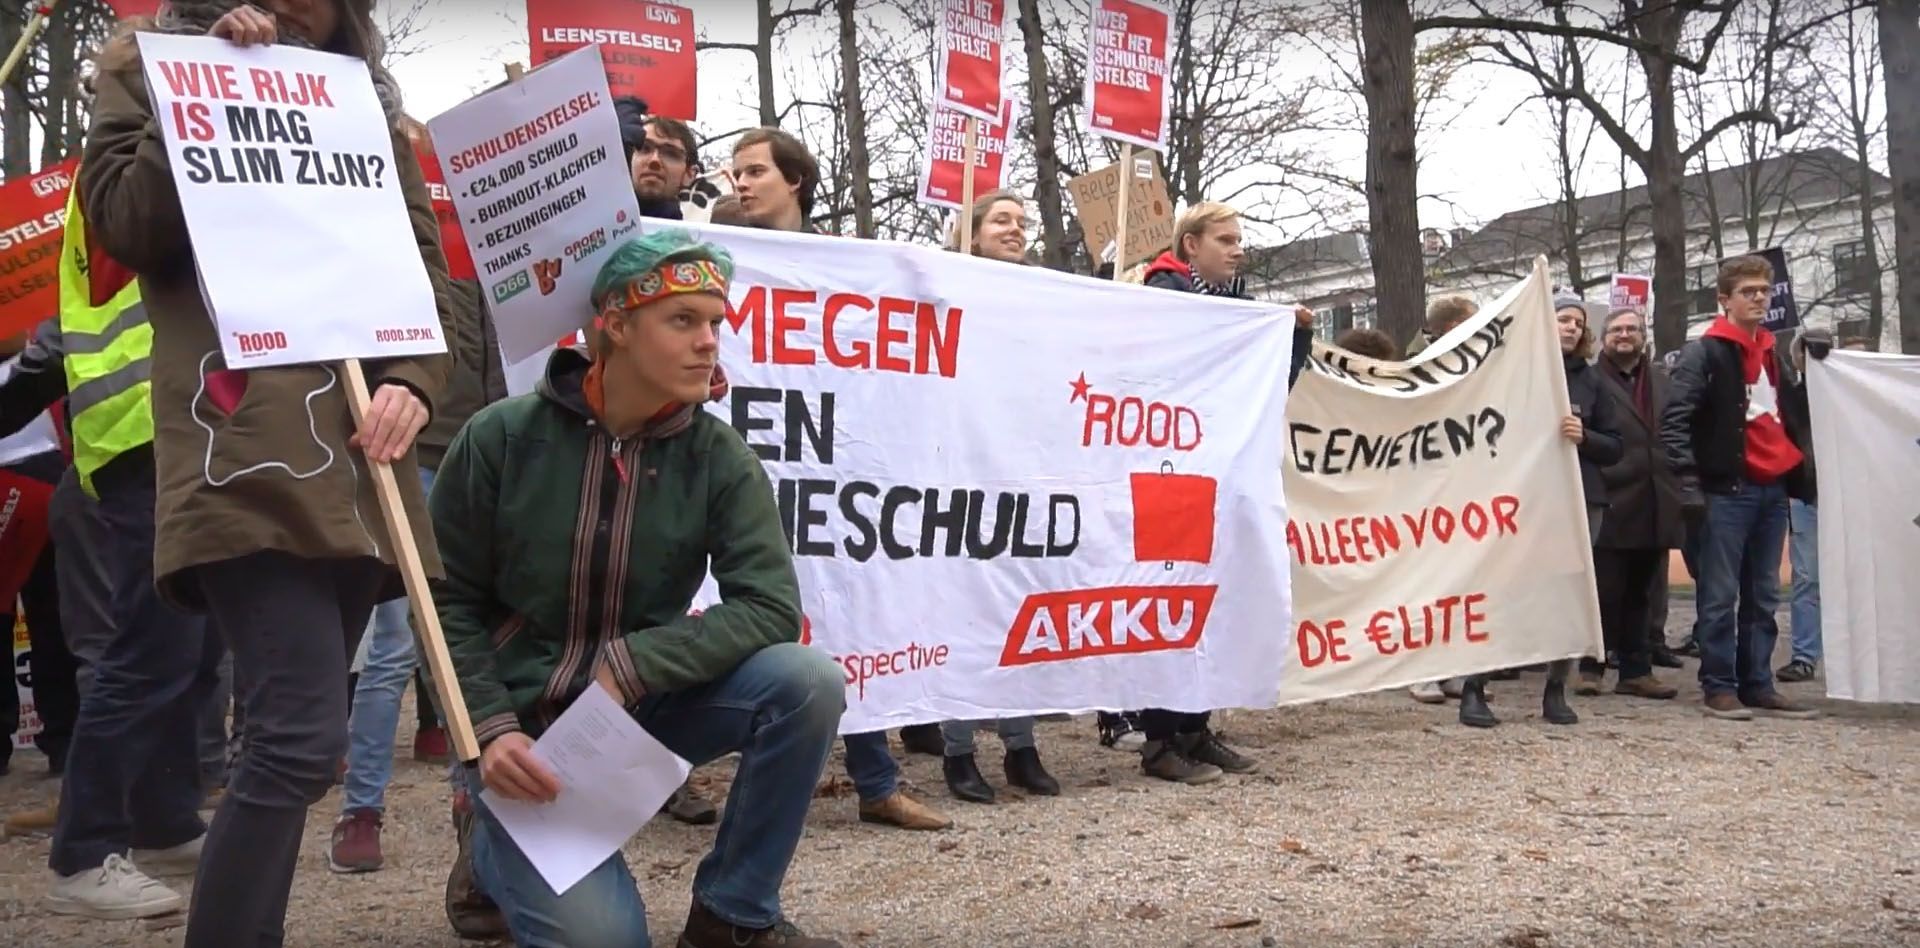 "Мы не имеем возможности учиться": студенты в Нидерландах устроили масштабный митинг